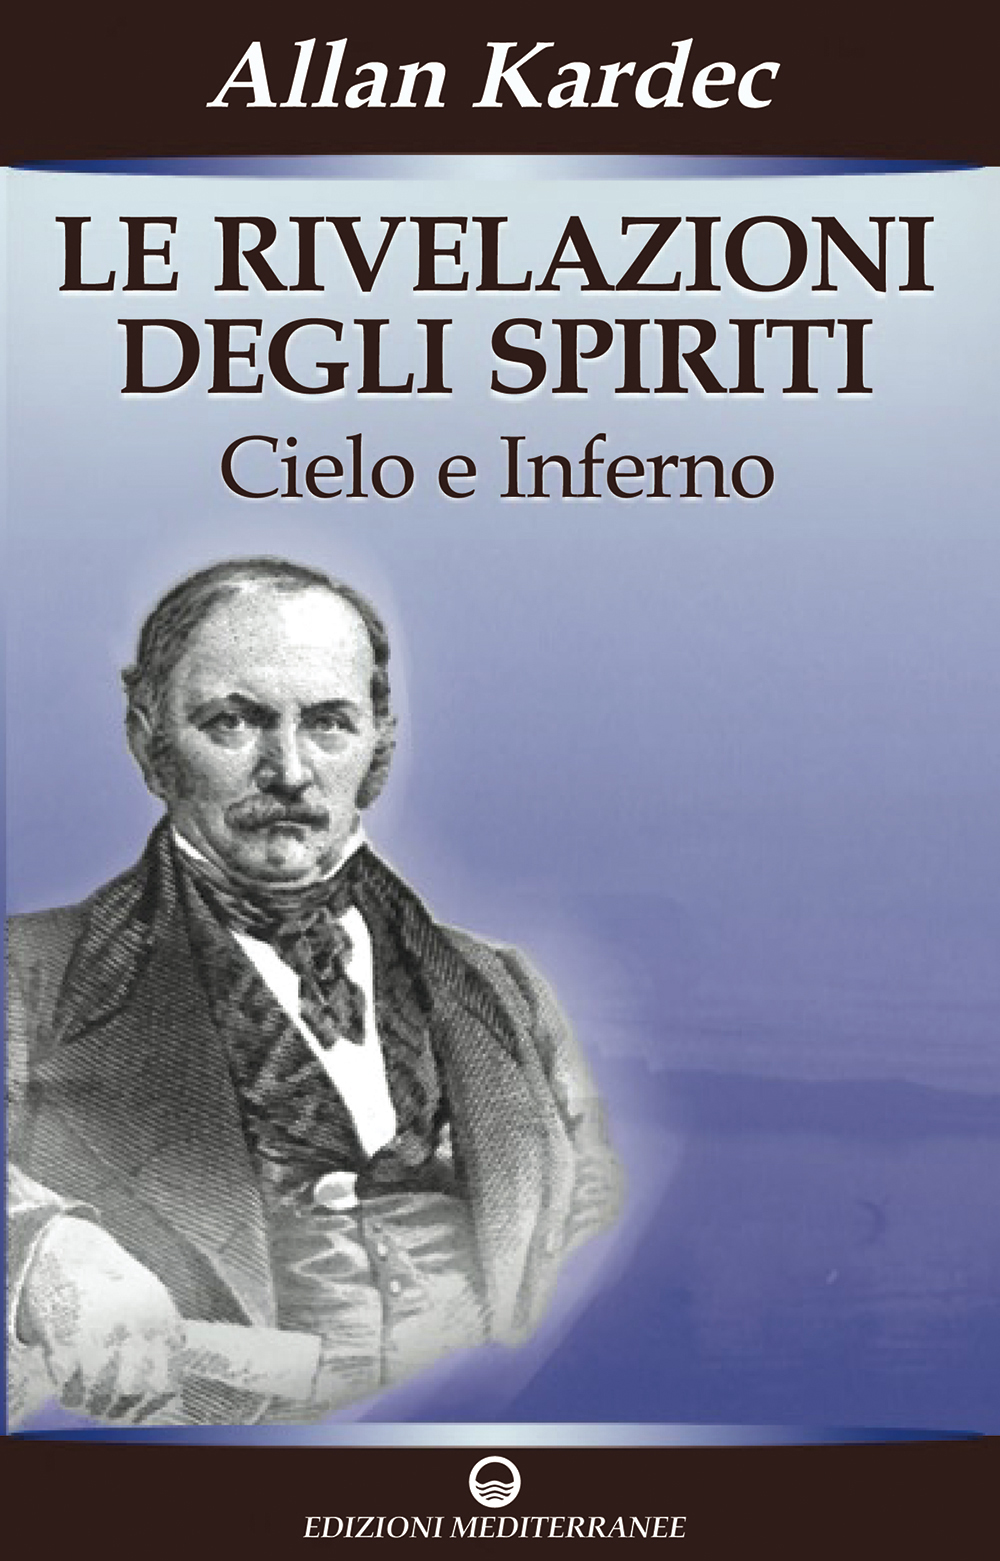 Libri Allan Kardec - Le Rivelazioni Degli Spiriti NUOVO SIGILLATO, EDIZIONE DEL 28/03/2007 SUBITO DISPONIBILE